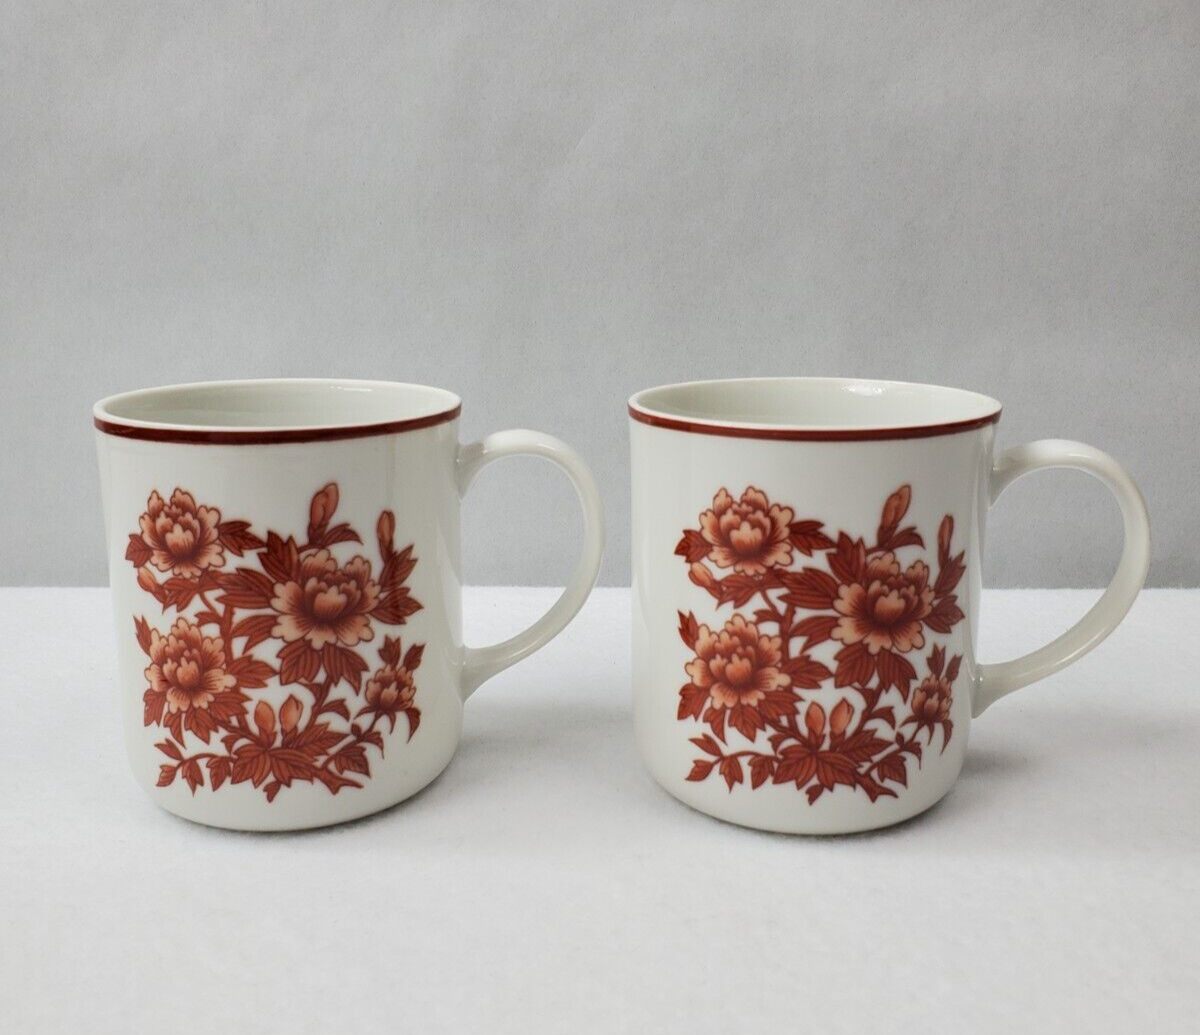 Vintage Coffee Mug Fine China Japan Red Orange Flowers 8 oz Set of 2 Mid Century